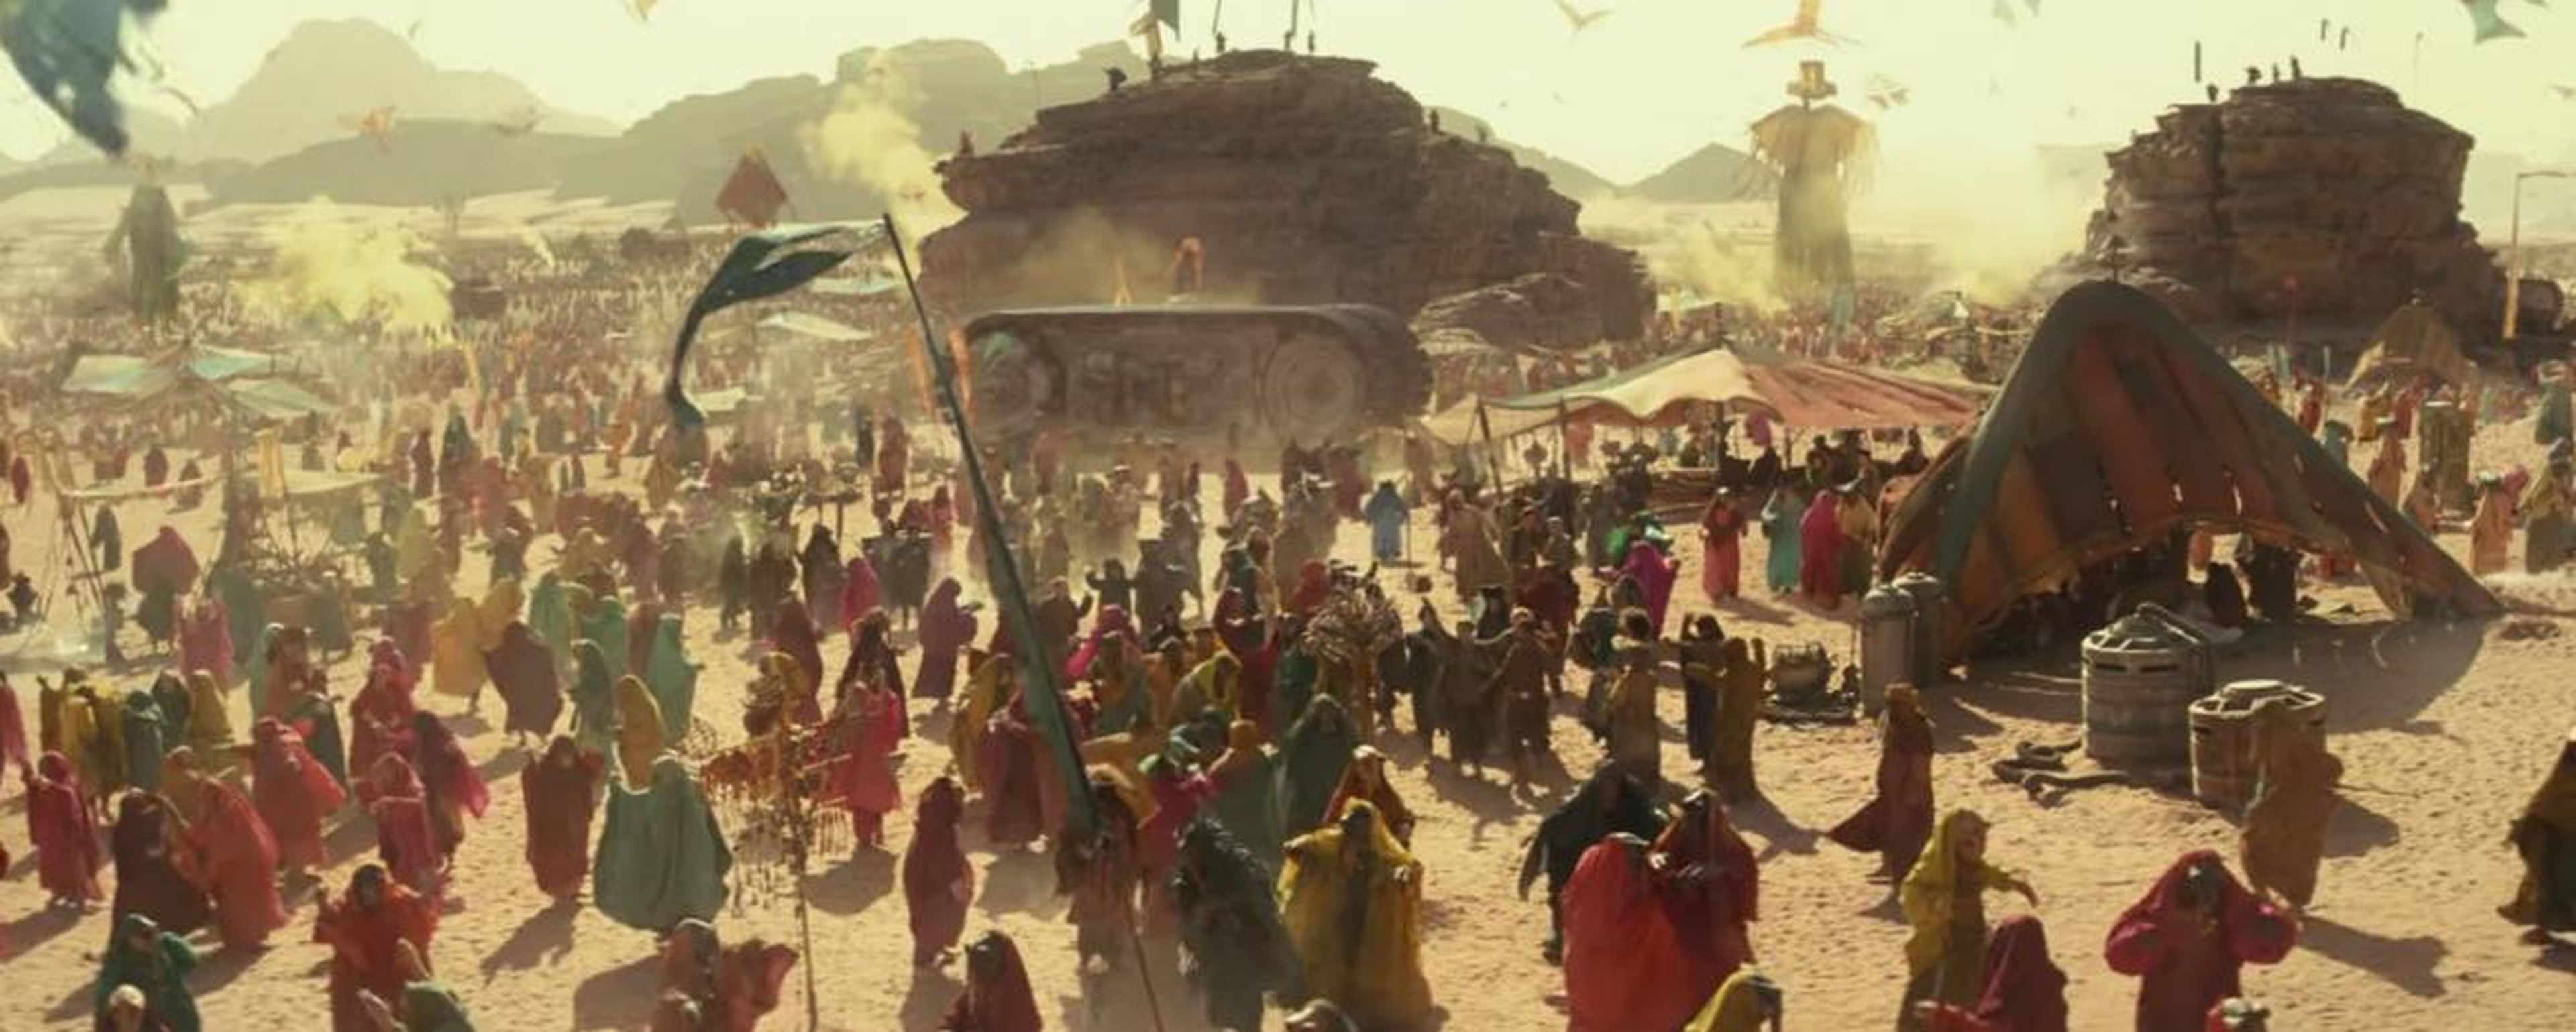 El festival se parece mucho a la versión de "Star Wars" de Burning Man.